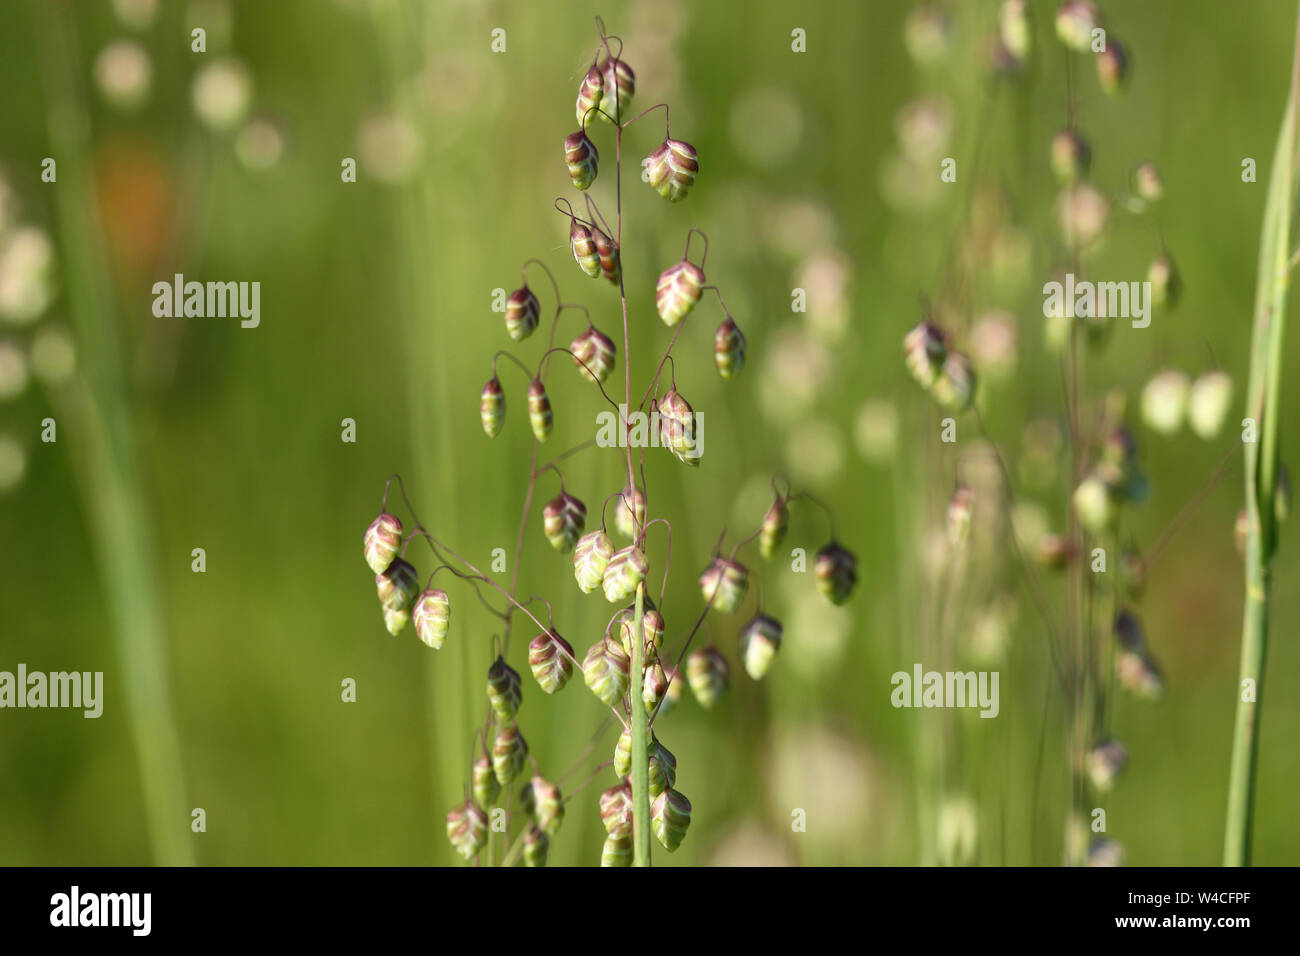 Briza media Quaking-grass - decorative grass background Stock Photo